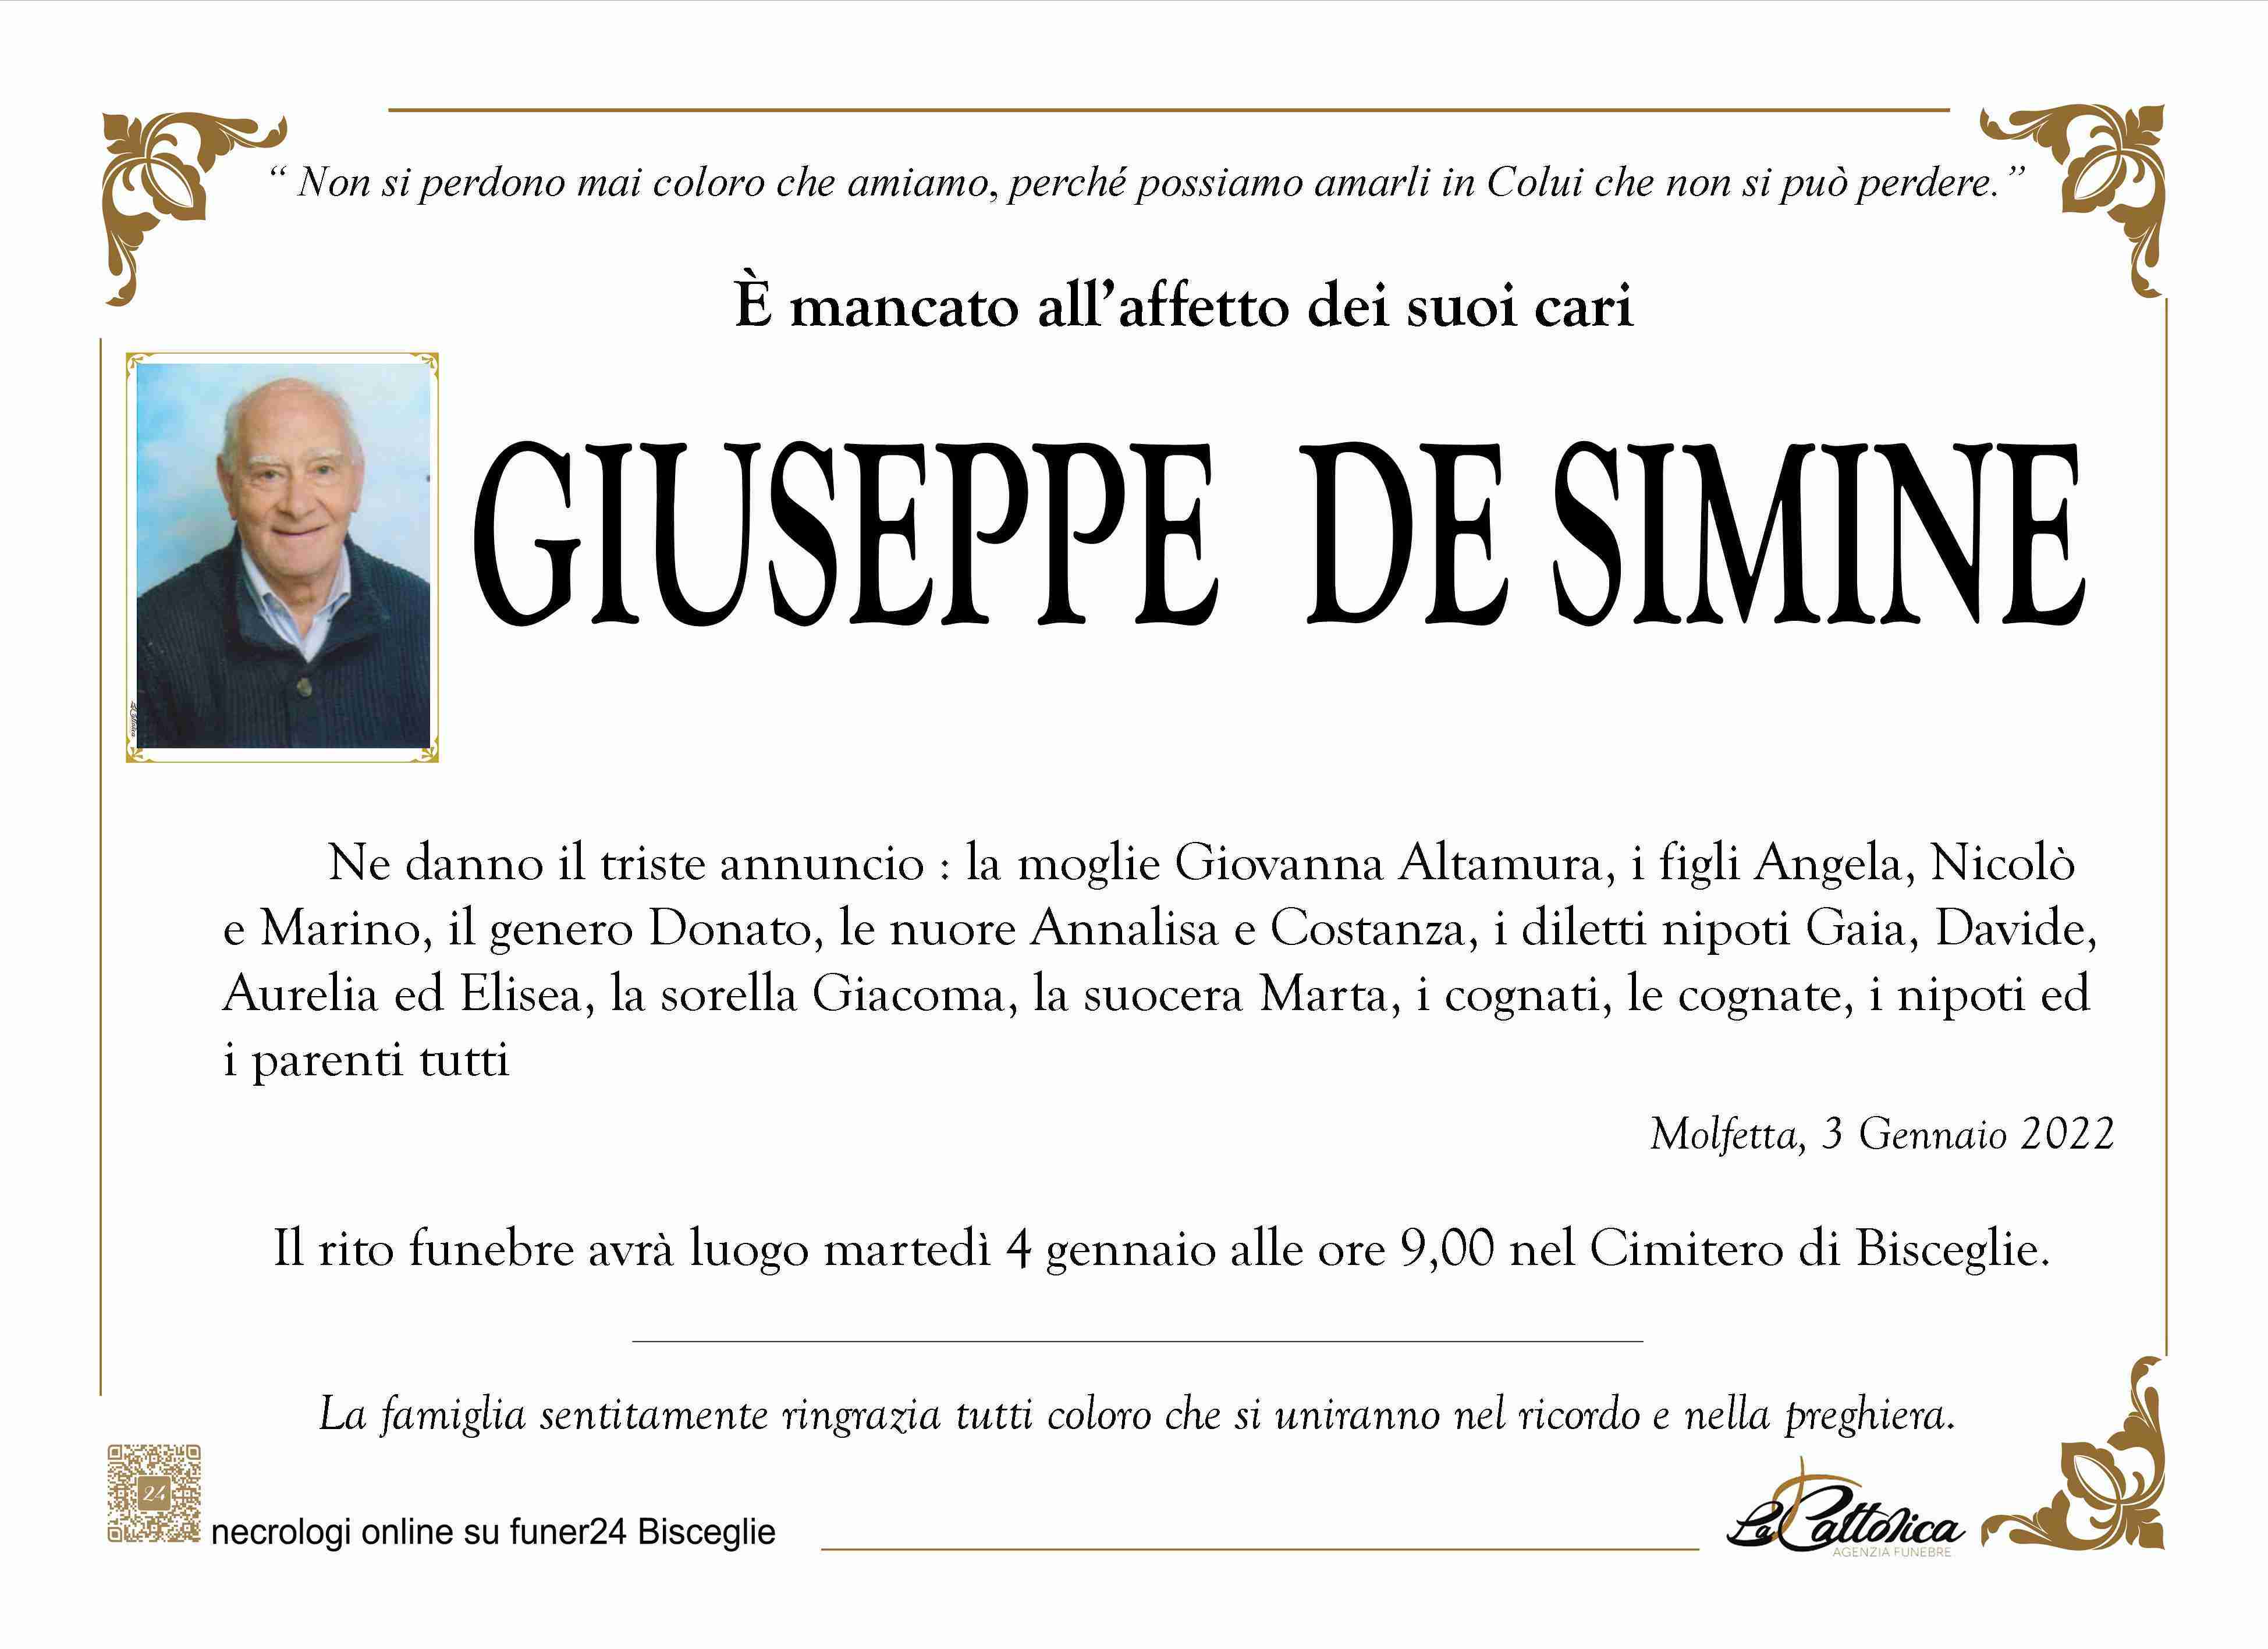 Giuseppe De Simine